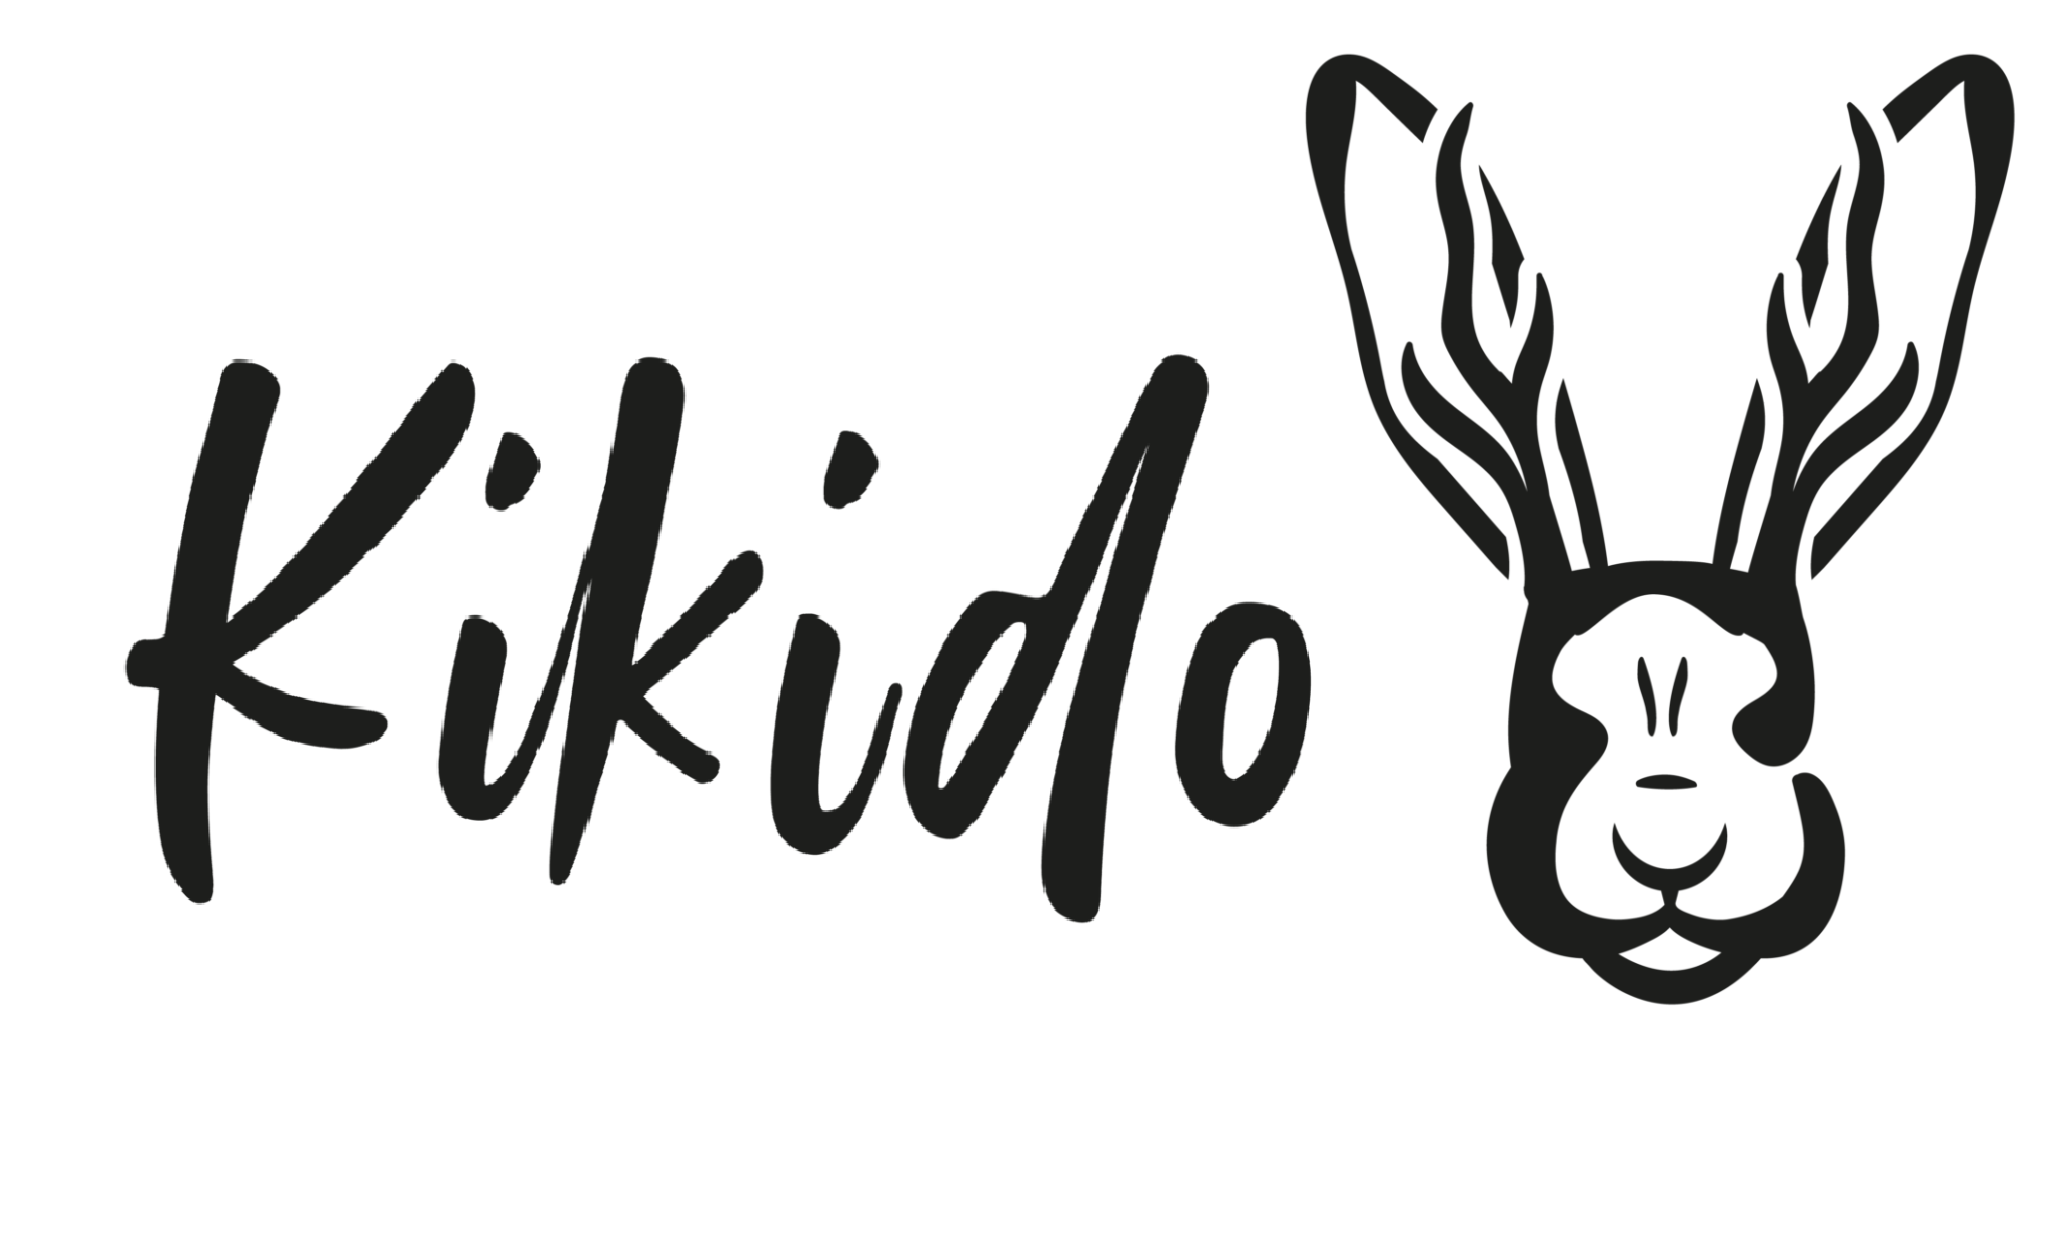 Kikido